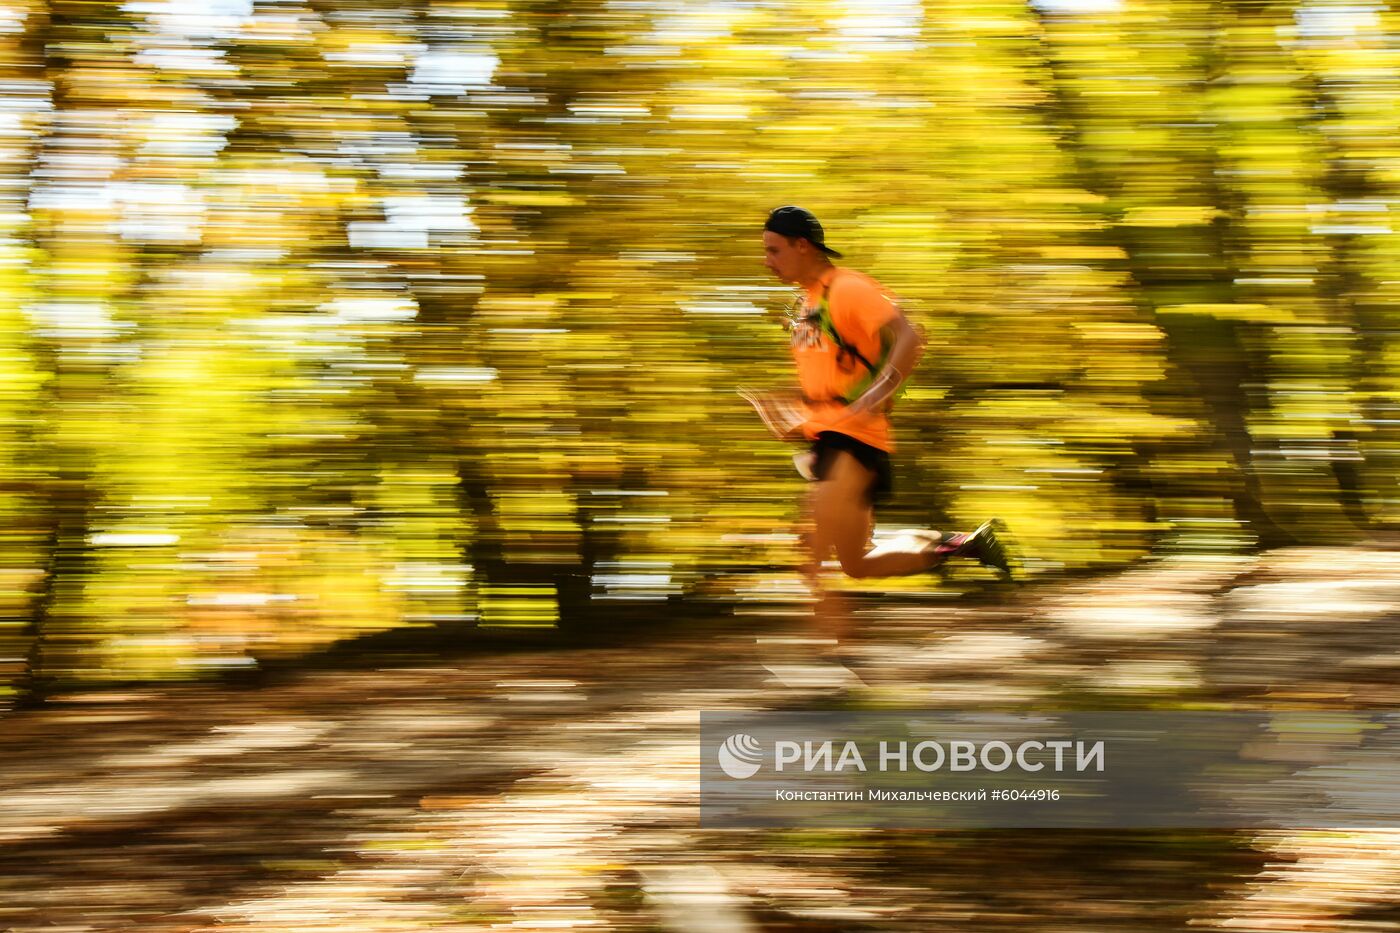 Горный марафон Crimea X Run